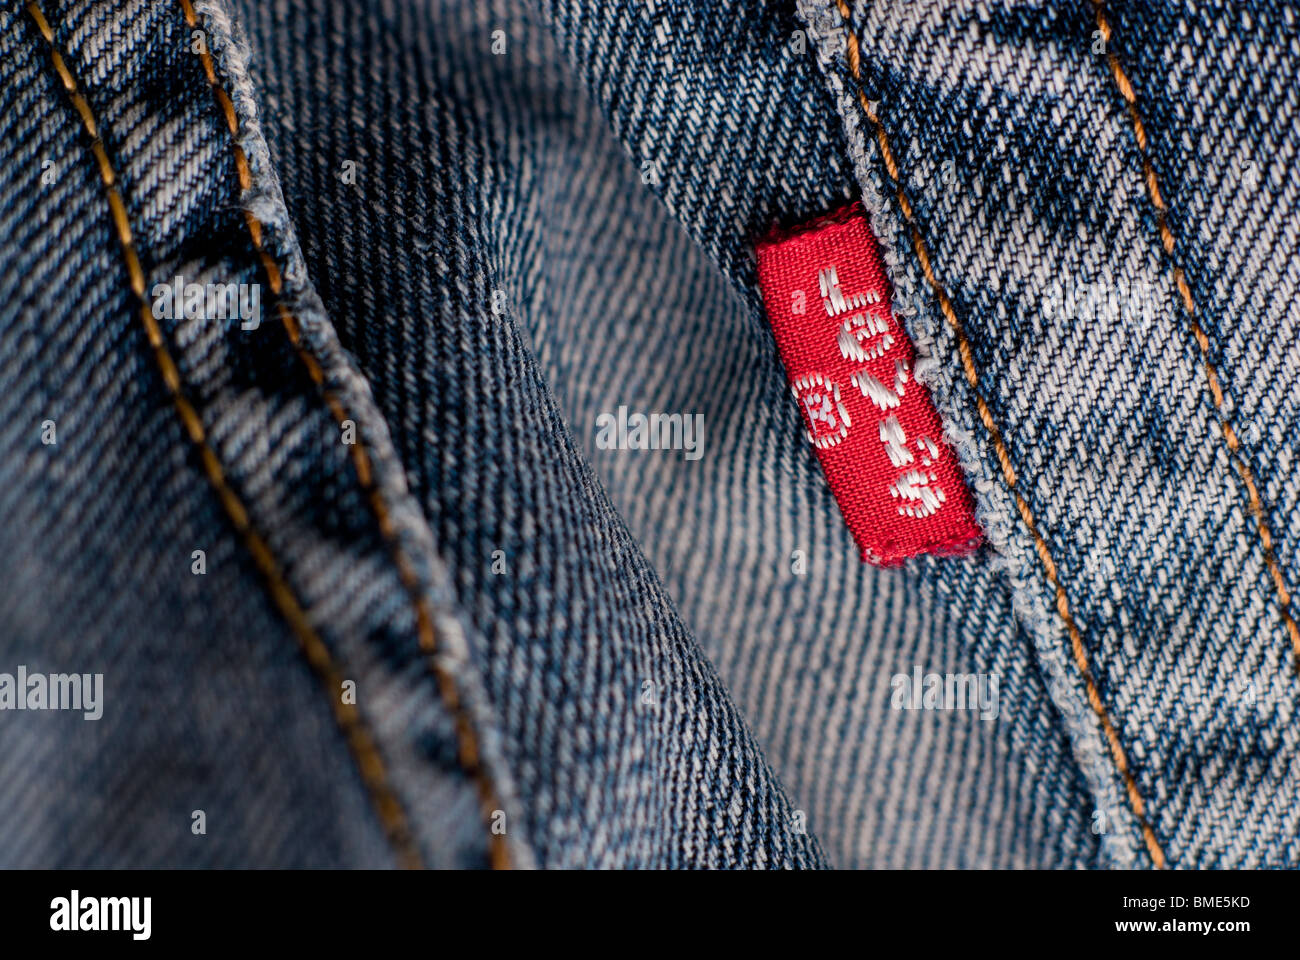 Etichetta e tasca rossa dei 501 jeans di Levi Foto stock - Alamy